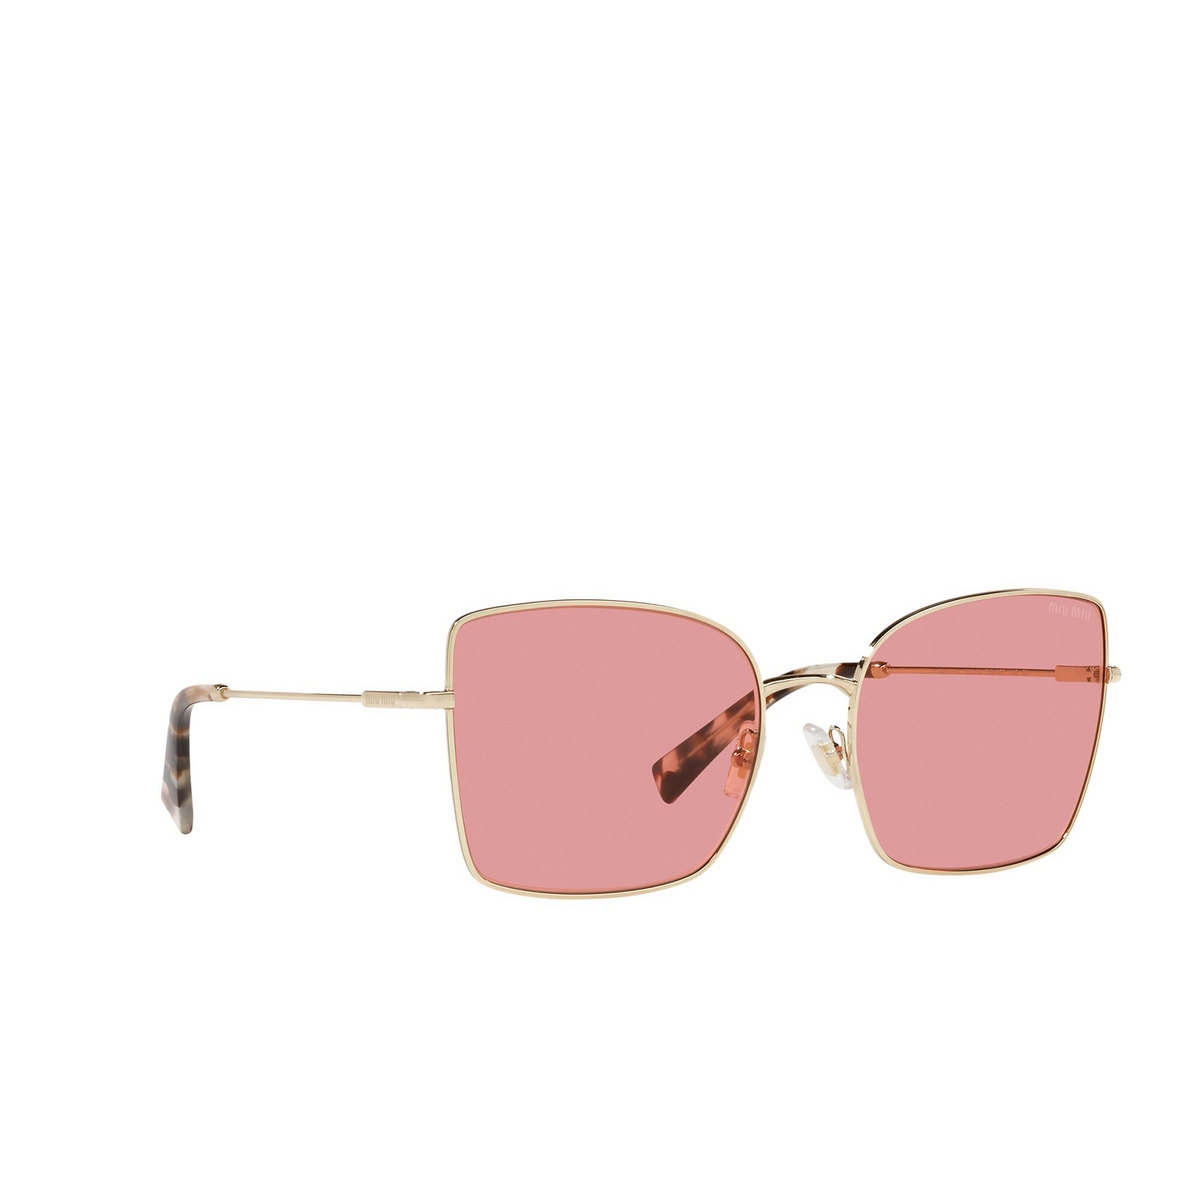 Miu Miu® Butterfly Sunglasses: MU 51WS color Pale Gold ZVN08P - three-quarters view.